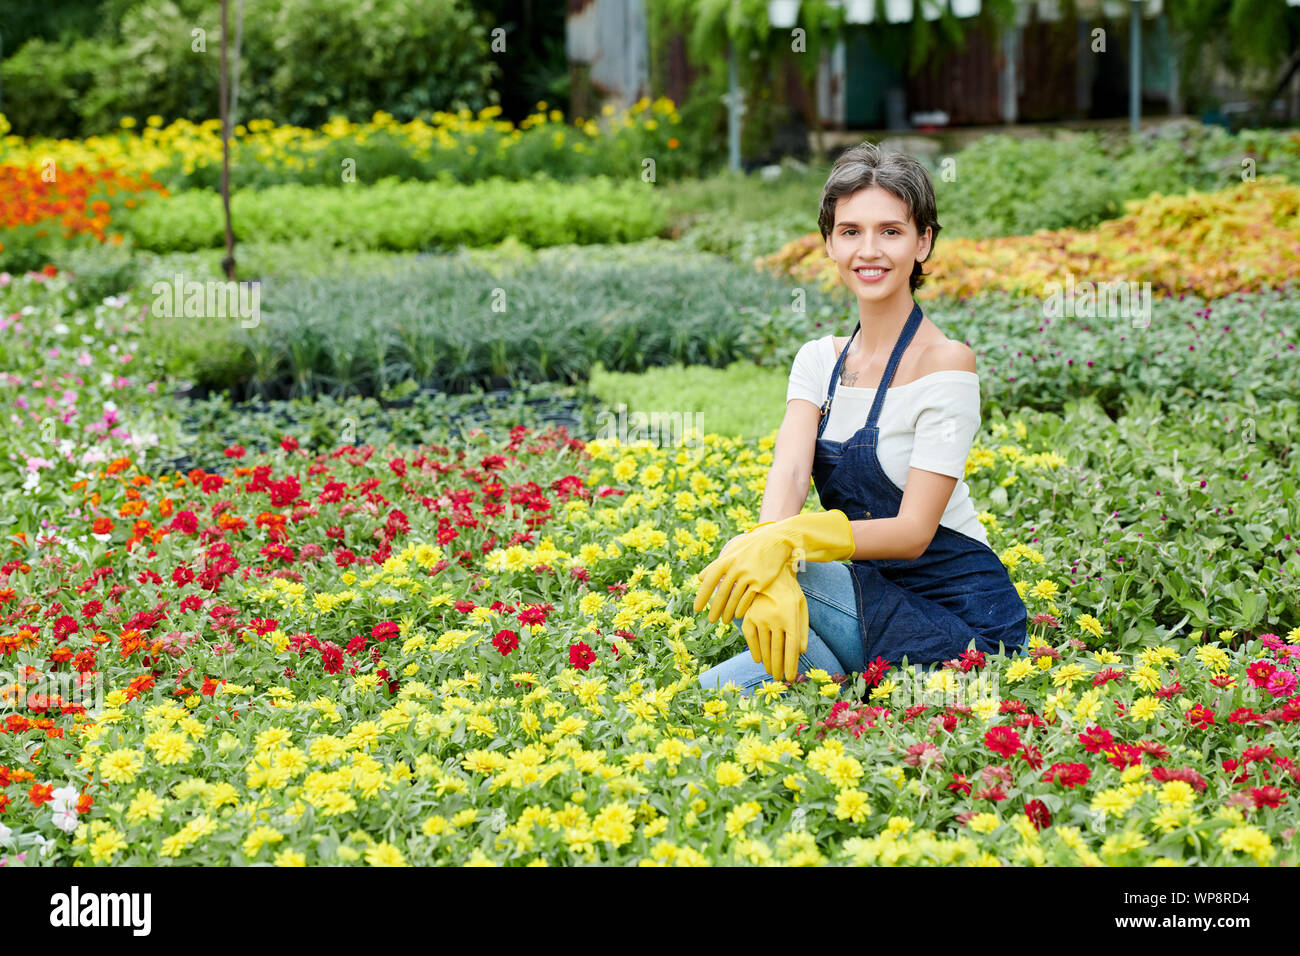 Felice giovane donna in grembiule e gomma glower godendo di trascorrere del tempo nel suo giardino con molte belle fioriture Foto Stock